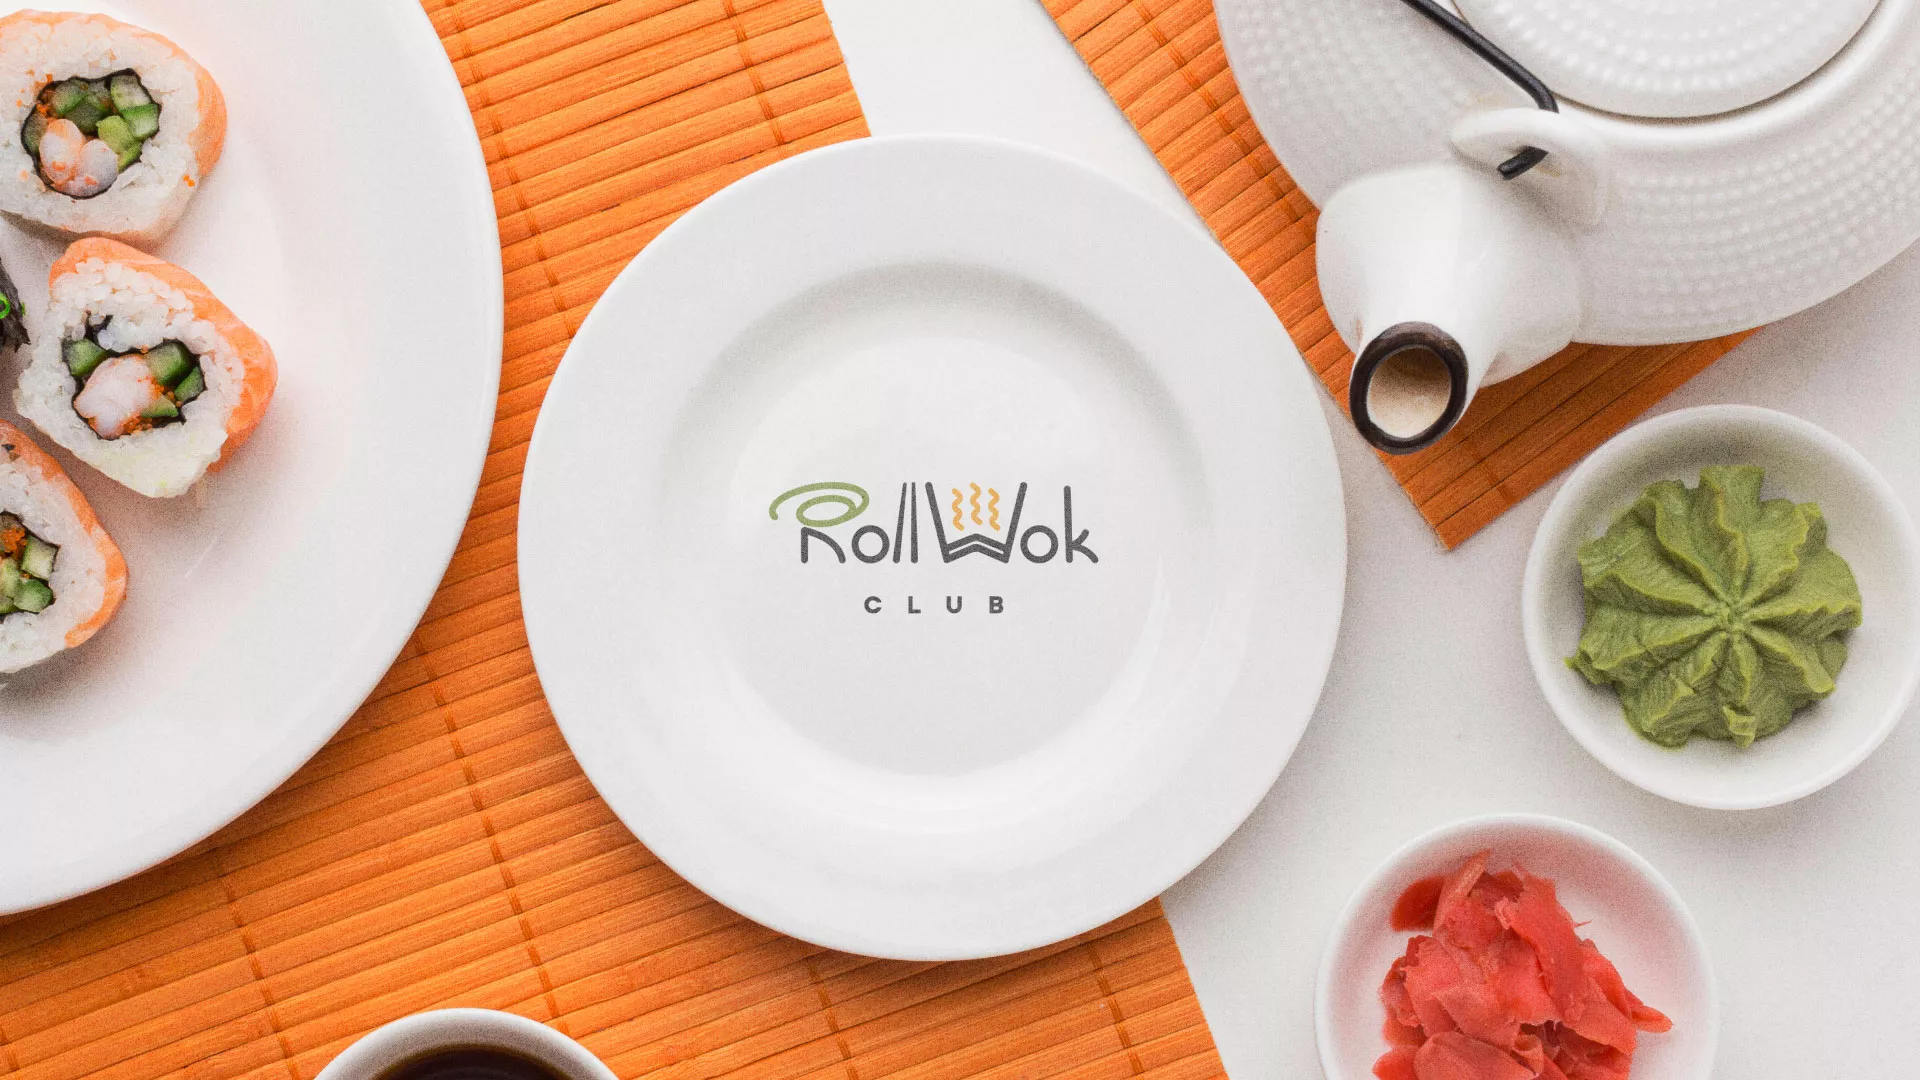 Разработка логотипа и фирменного стиля суши-бара «Roll Wok Club» в Вельске